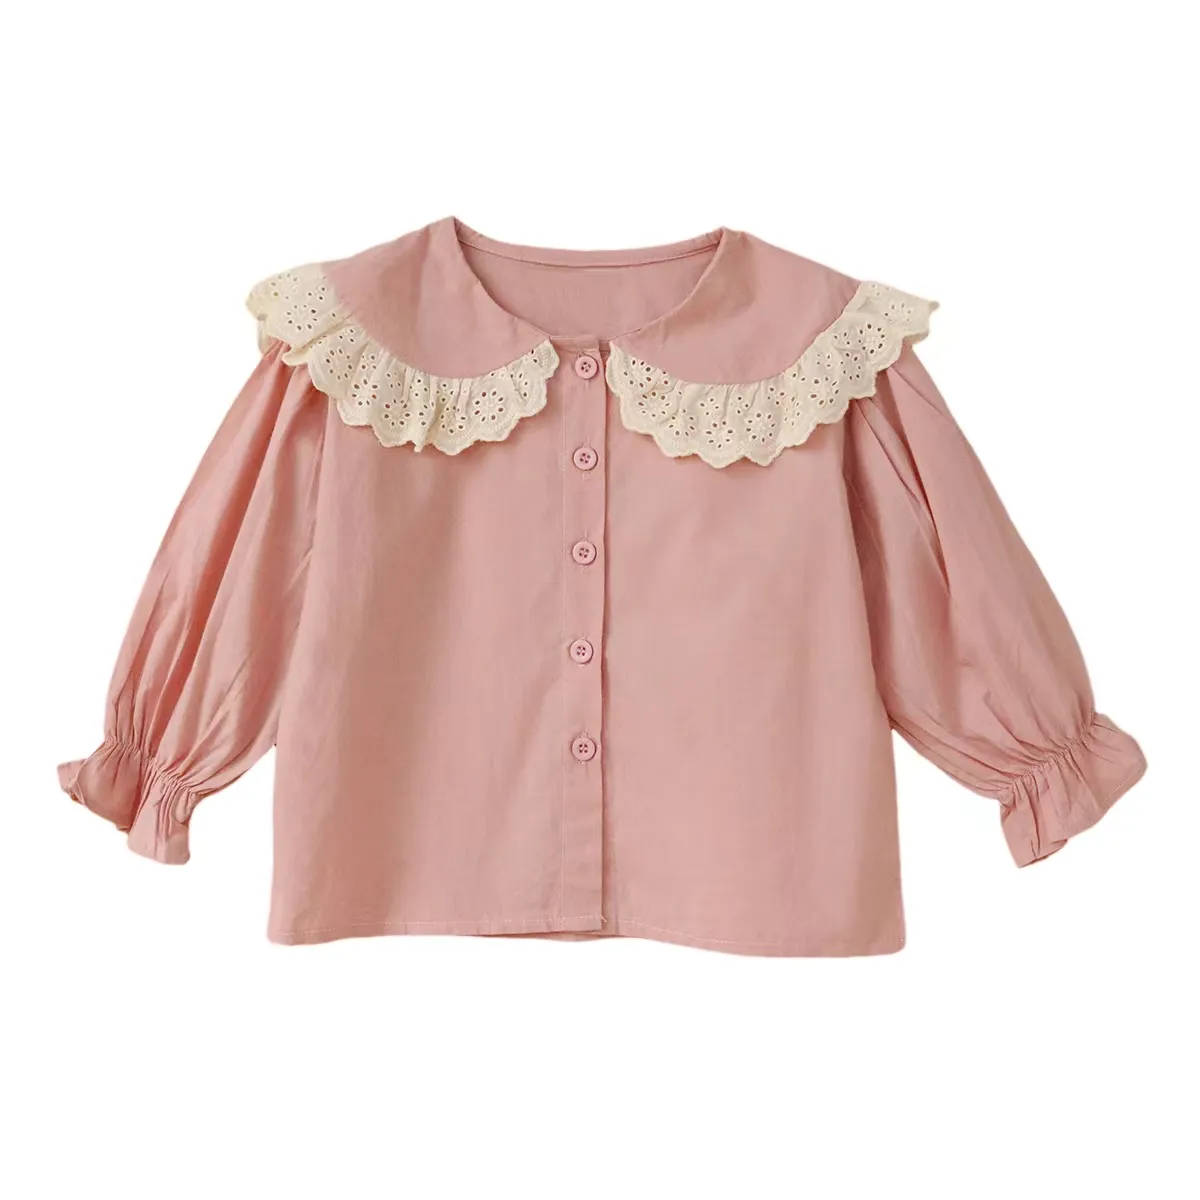 신상품 귀여운 레이스 네크 라인 어린이 티셔츠 소녀 짠 면 블라우스 키즈 의류 여름 아기 탑 셔츠